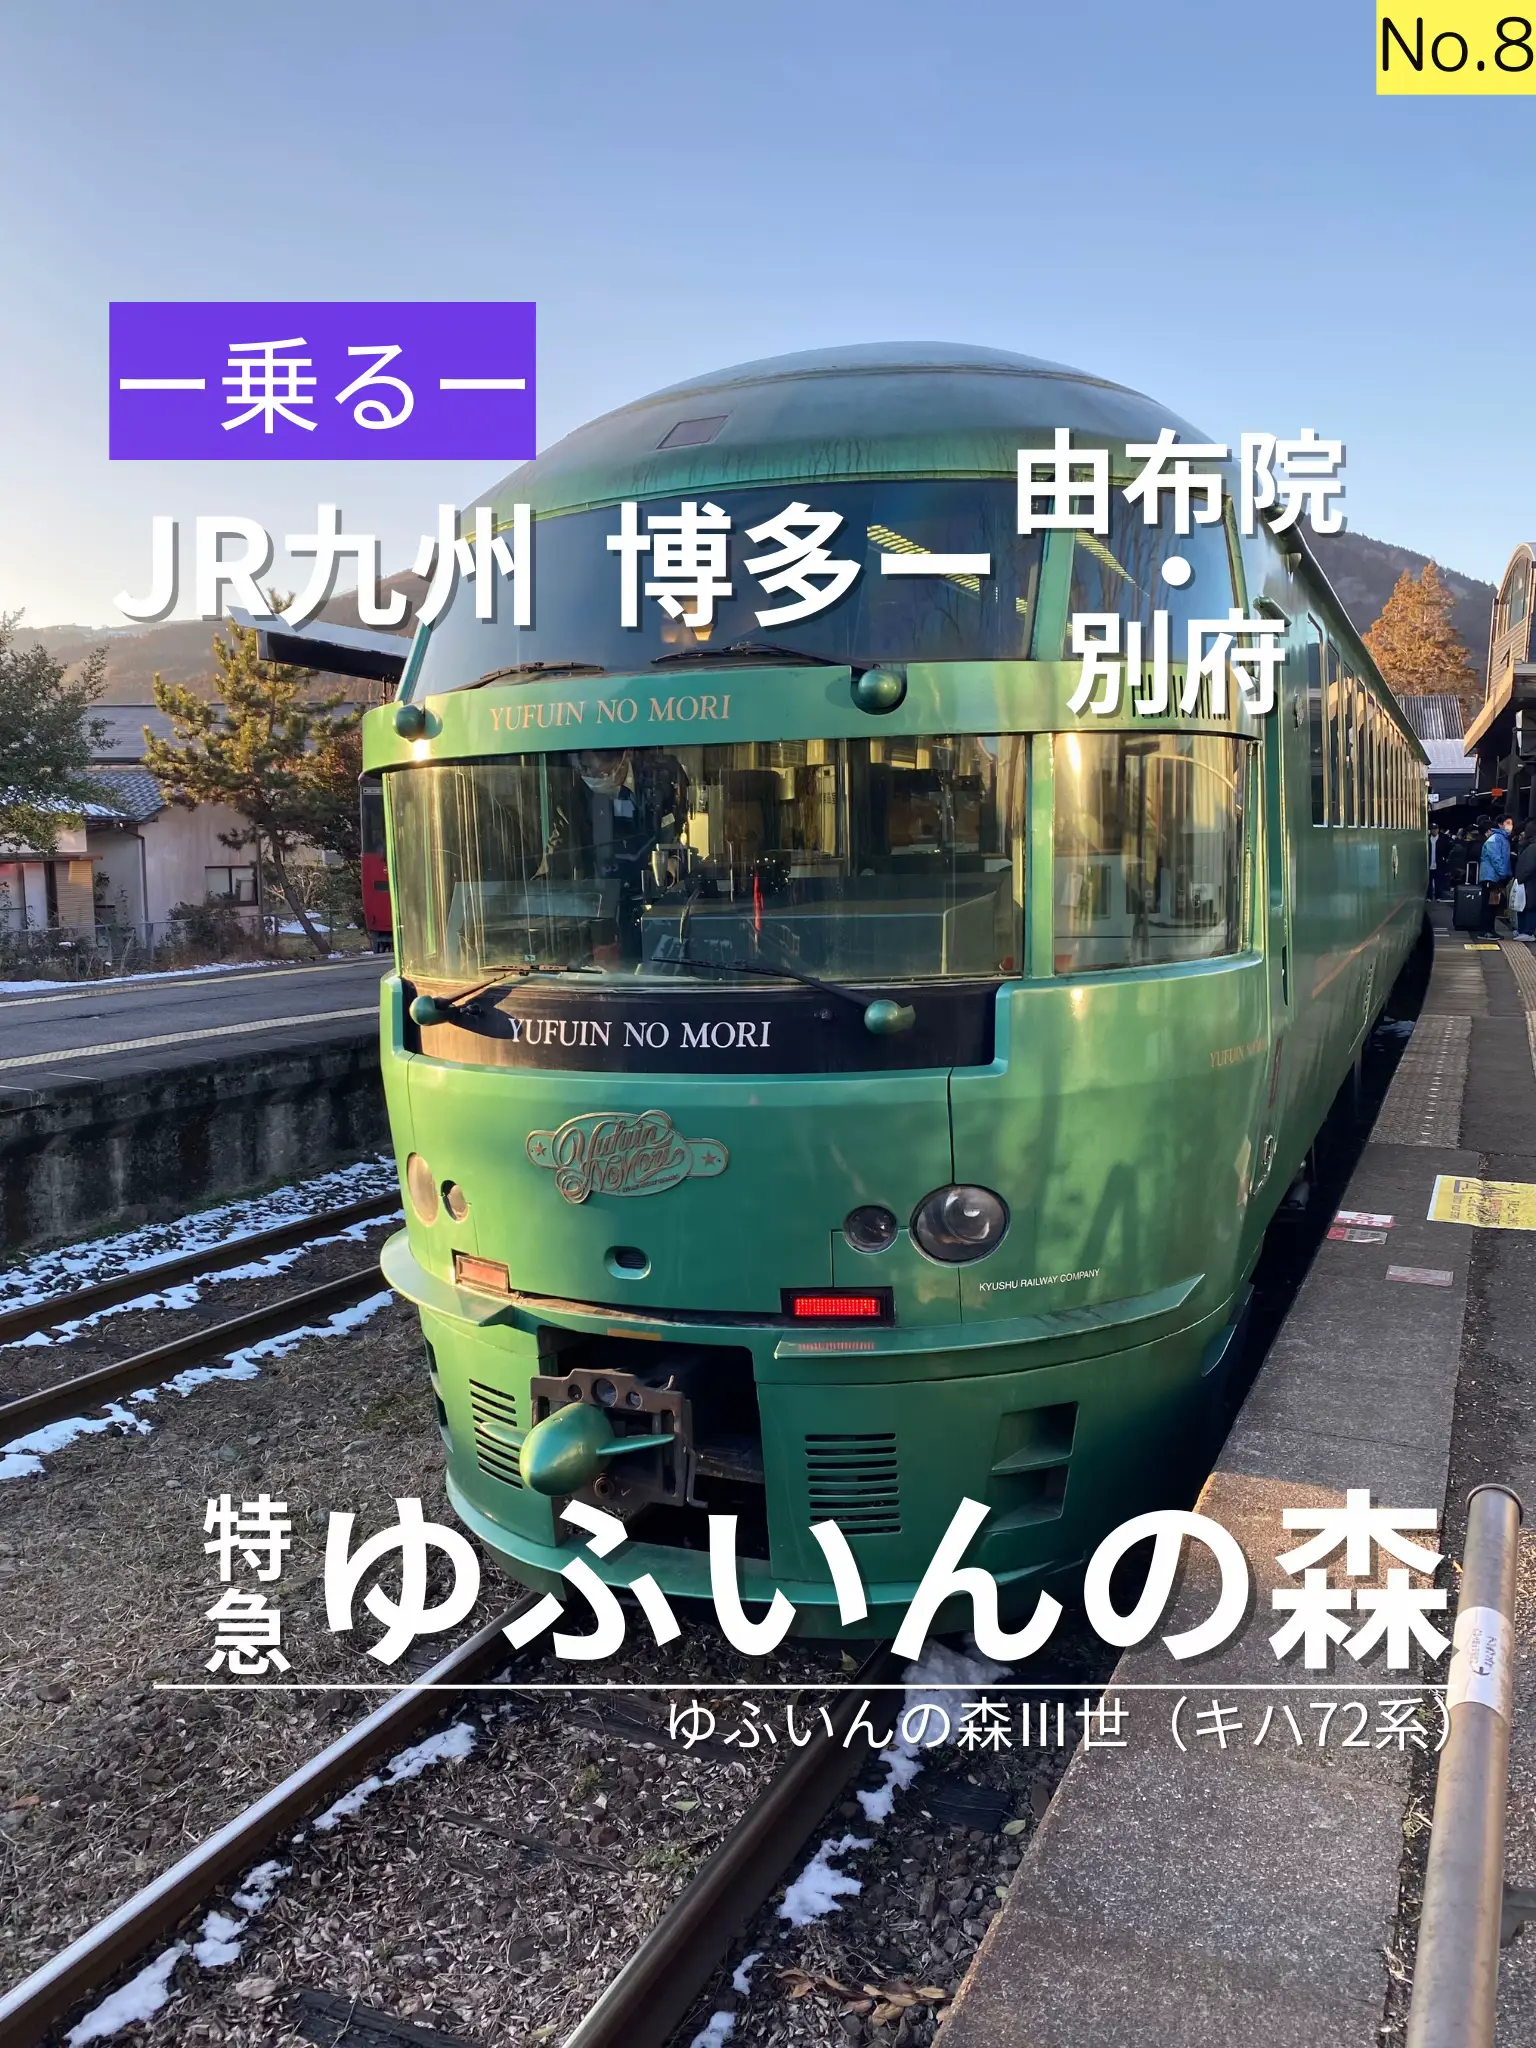 九州 おすすめ 観光スポット 電車 - Lemon8検索